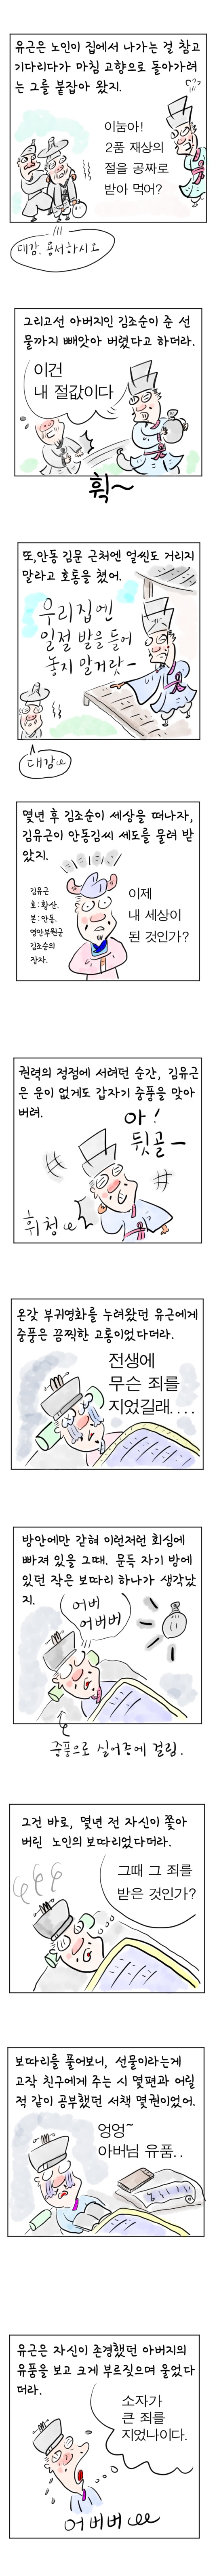 [역사툰] 史(사)람 이야기 22화: 안동김씨 세도가 김유근 이야기 